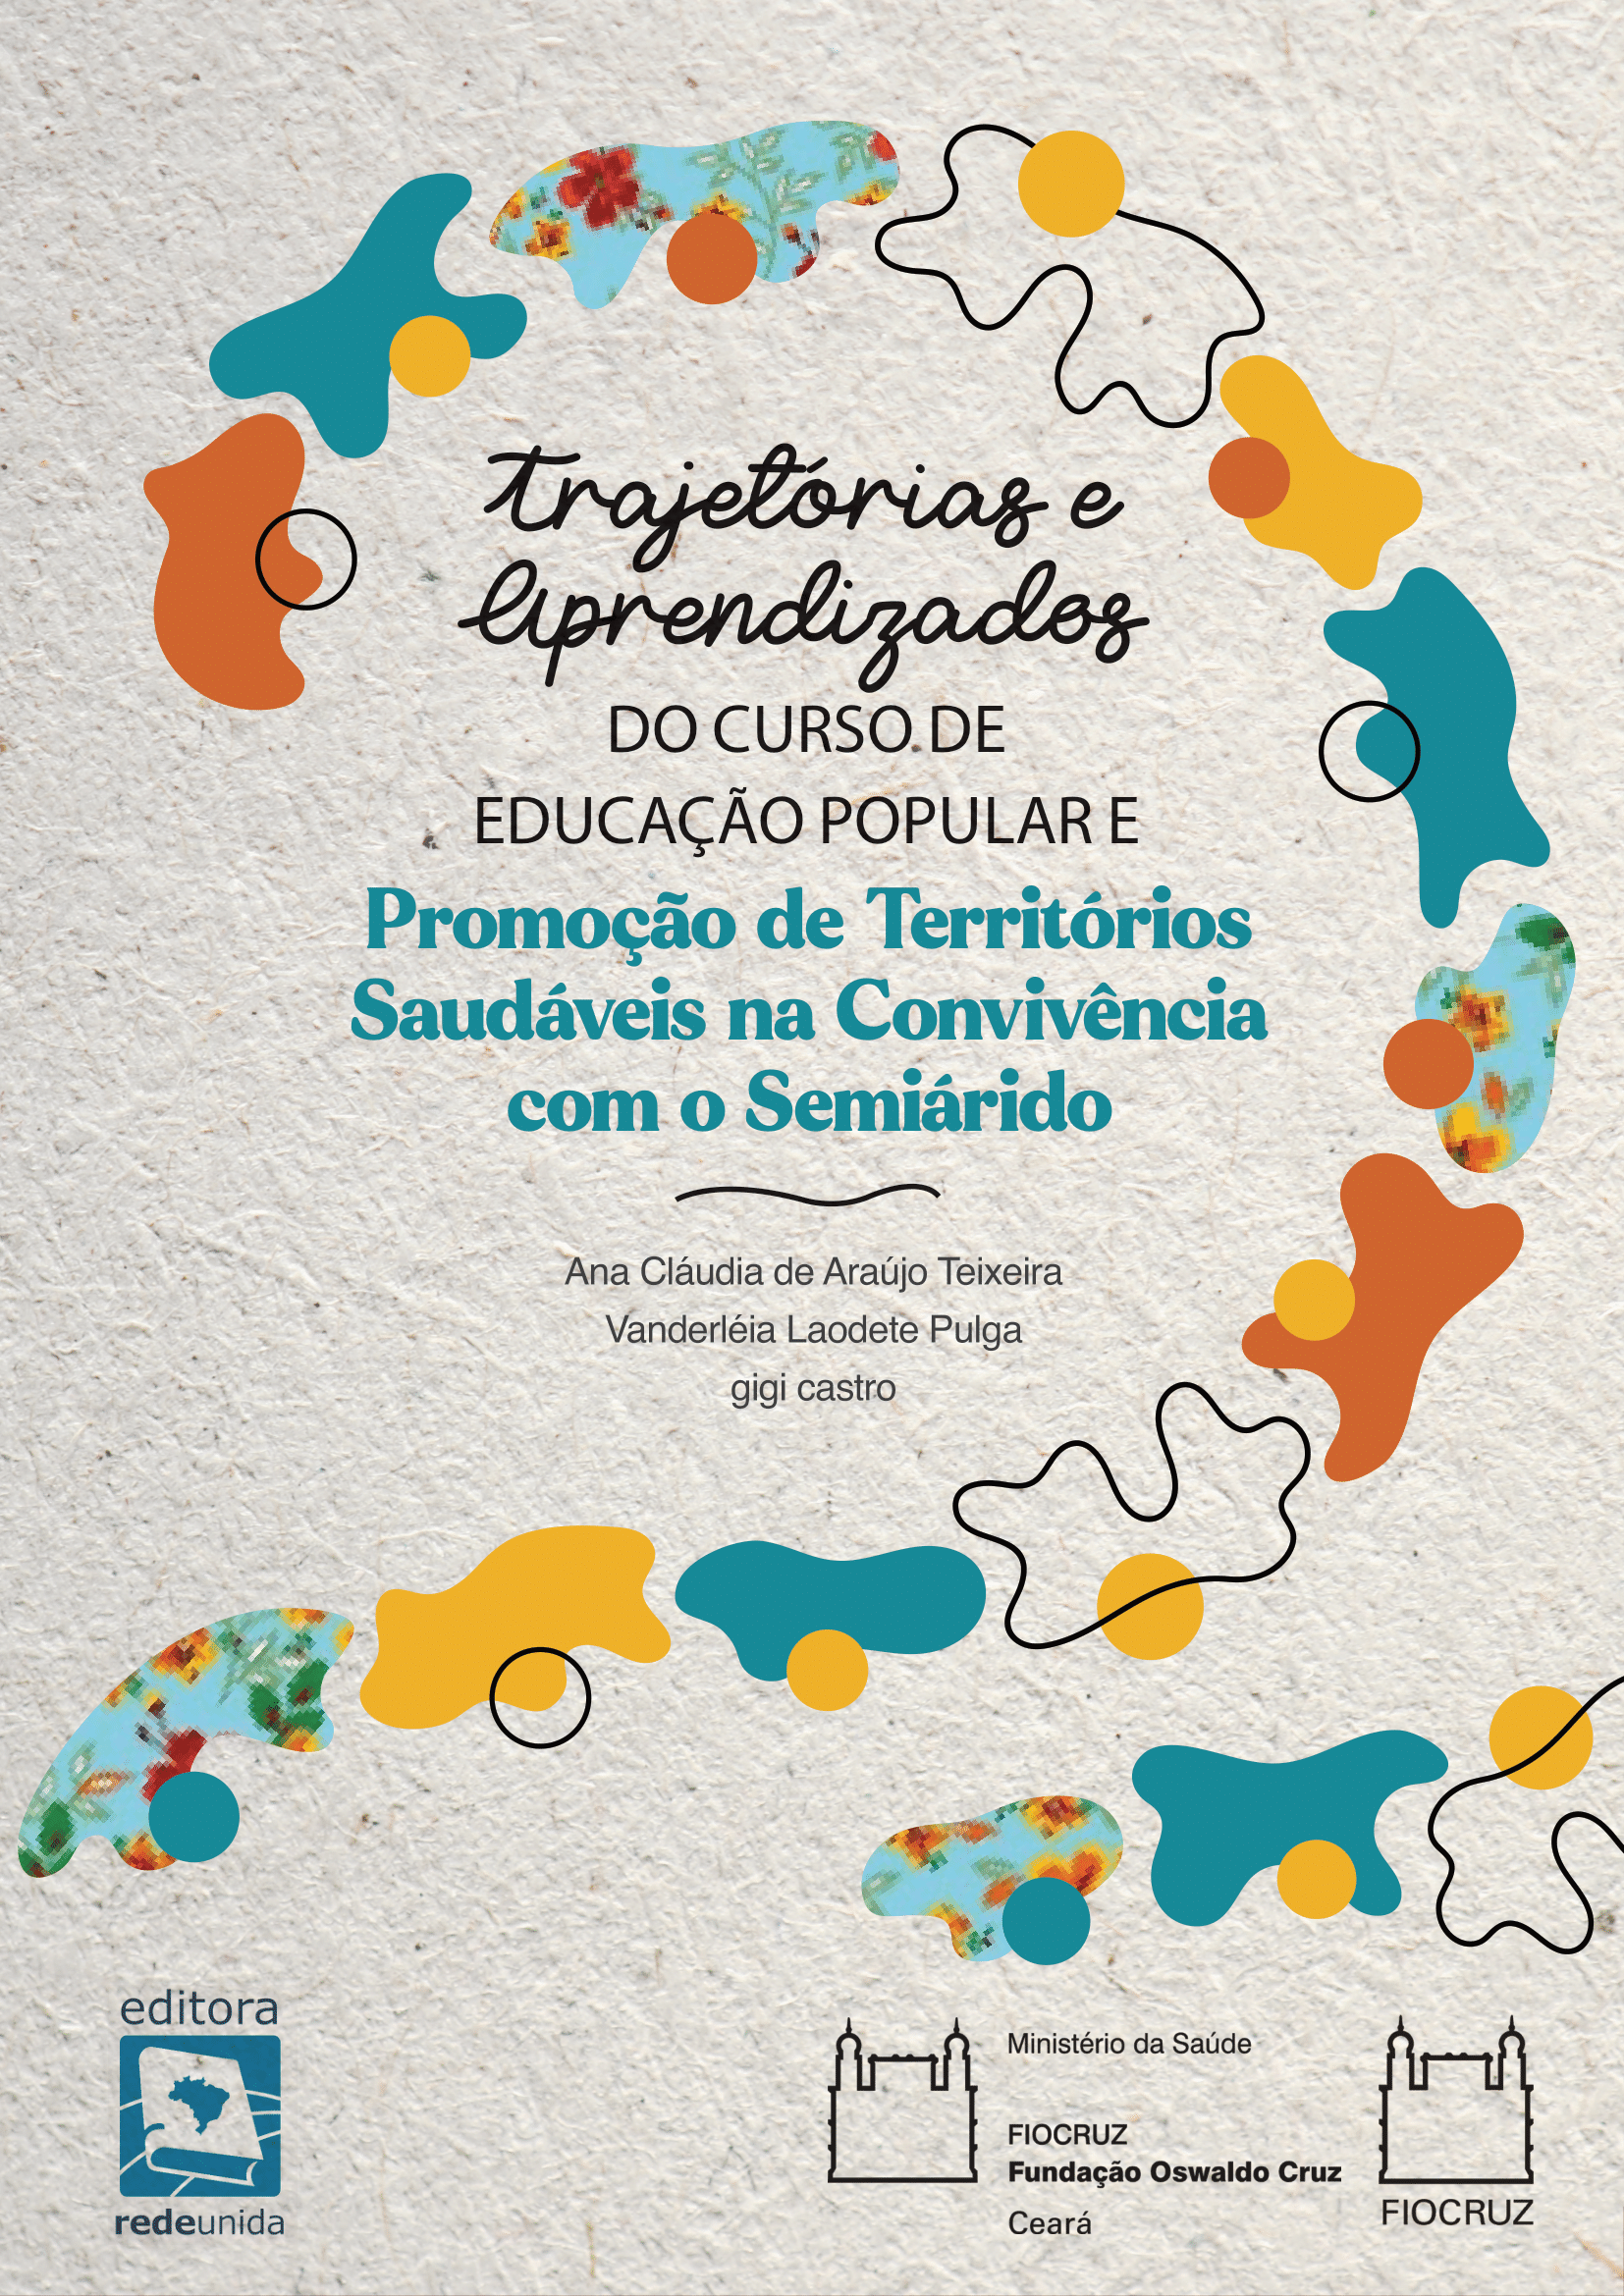 Trajetórias e aprendizados do curso de educação popular e promoção de territórios saudáveis na convivência com o semiárido